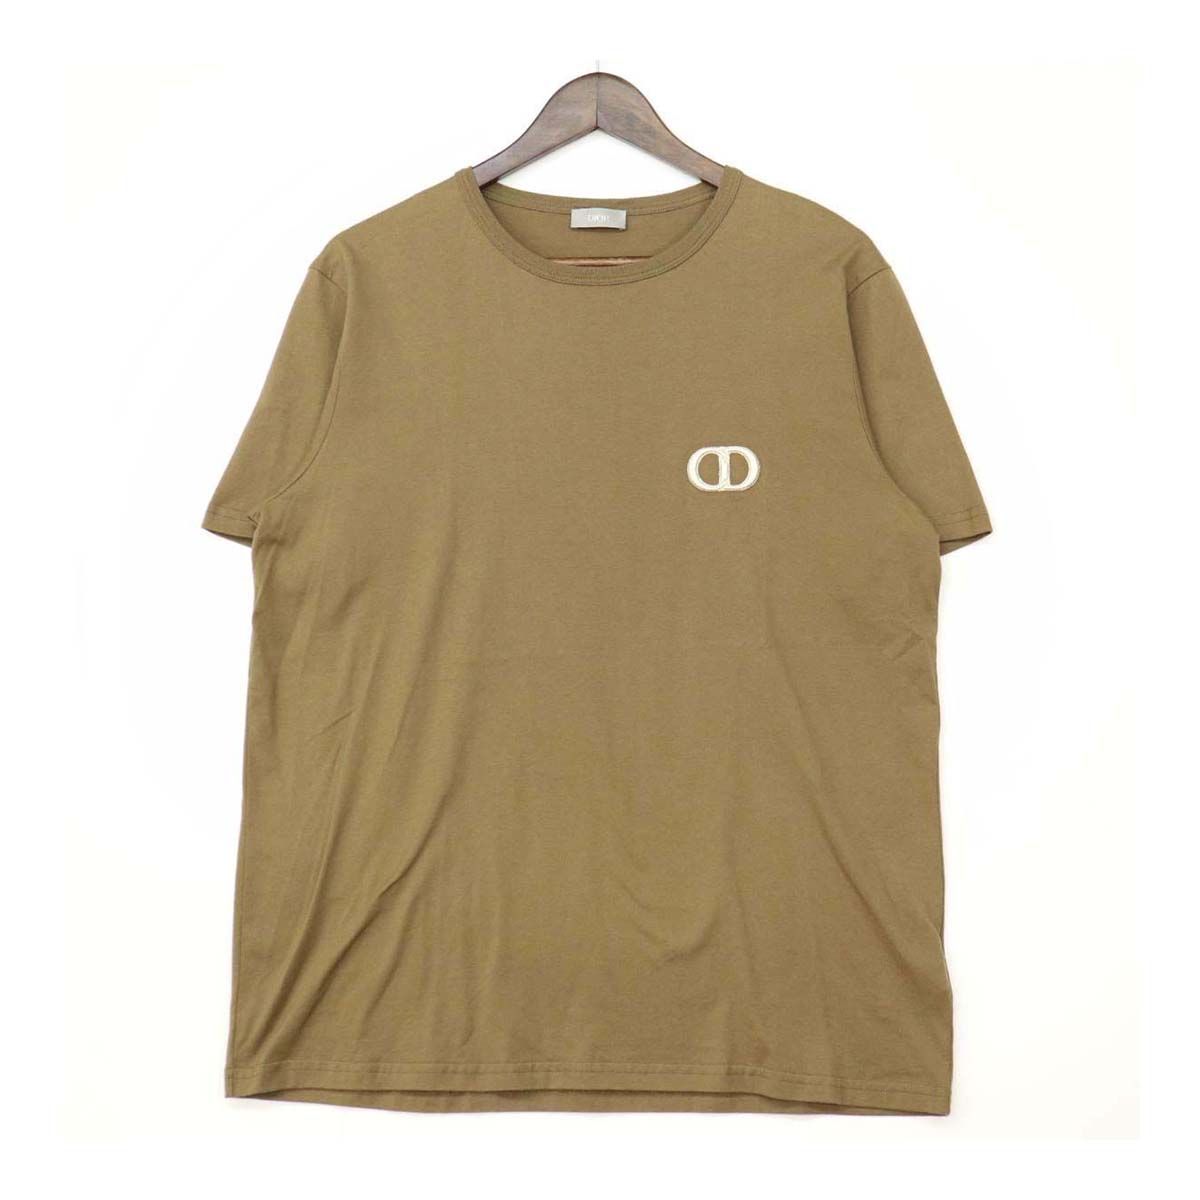 ディオール ロゴ 刺繍 Tシャツ 013J600A0677 メンズ カーキ系 Dior